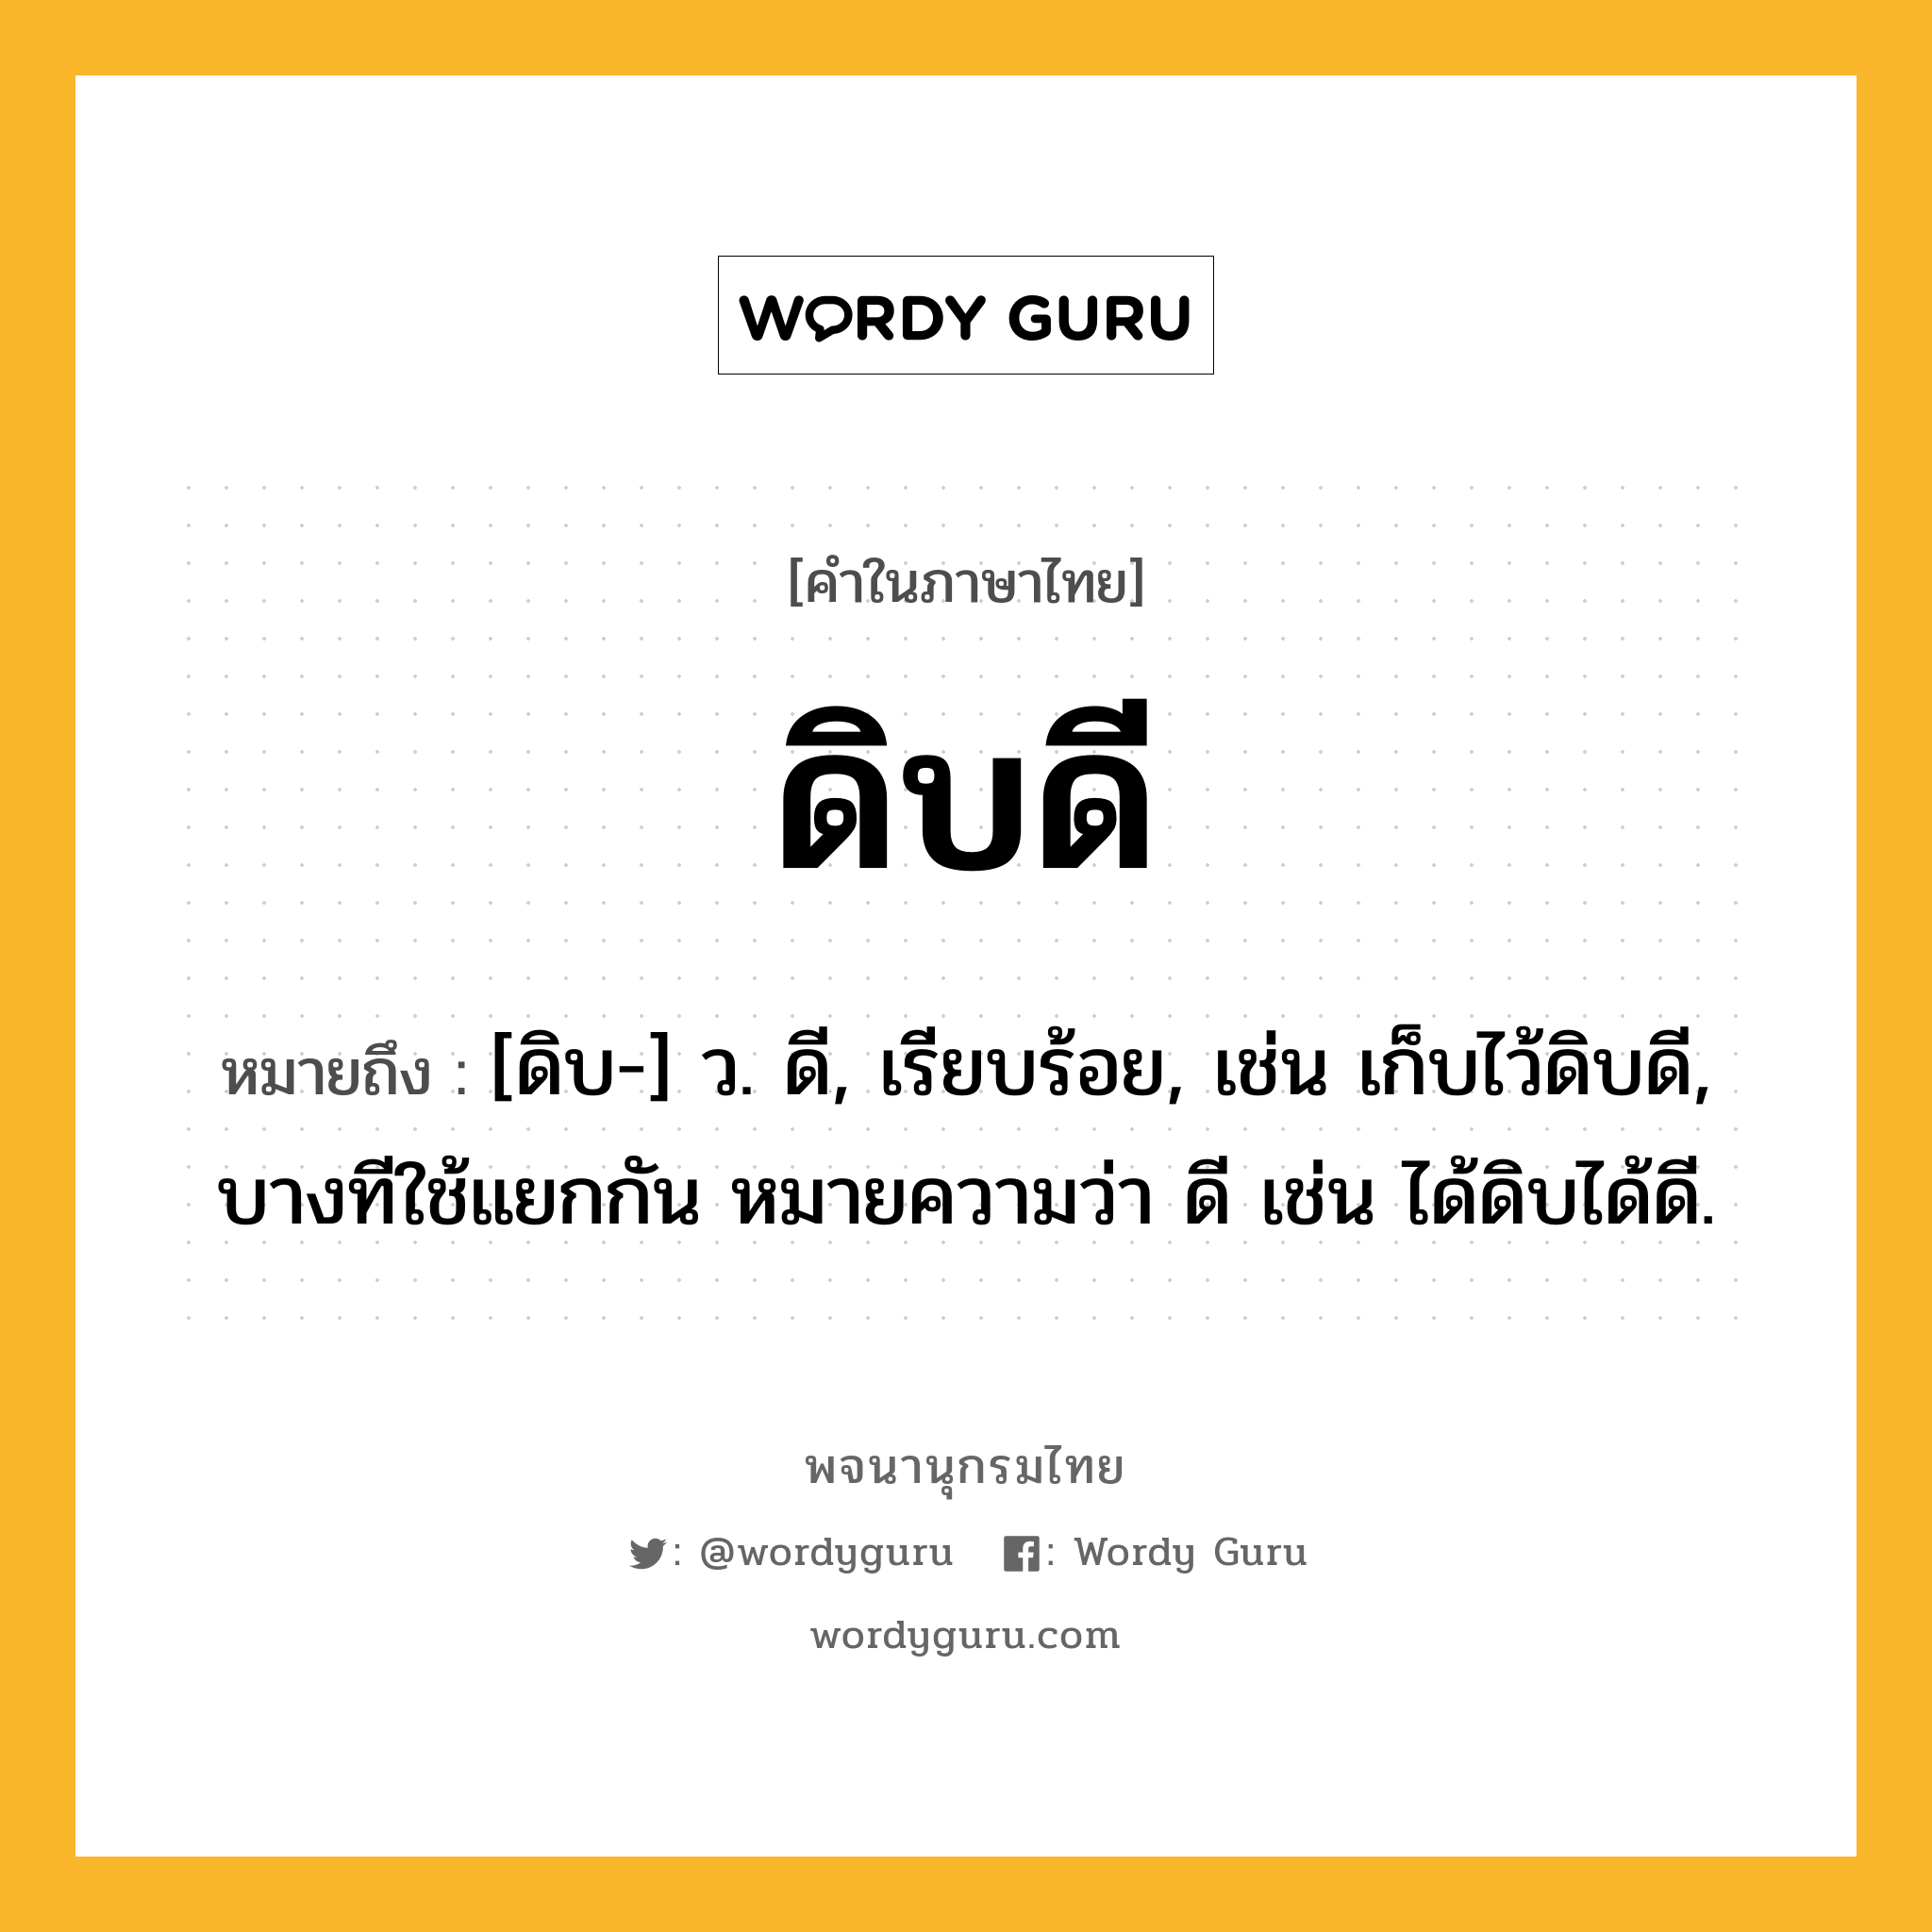 ดิบดี หมายถึงอะไร?, คำในภาษาไทย ดิบดี หมายถึง [ดิบ-] ว. ดี, เรียบร้อย, เช่น เก็บไว้ดิบดี, บางทีใช้แยกกัน หมายความว่า ดี เช่น ได้ดิบได้ดี.